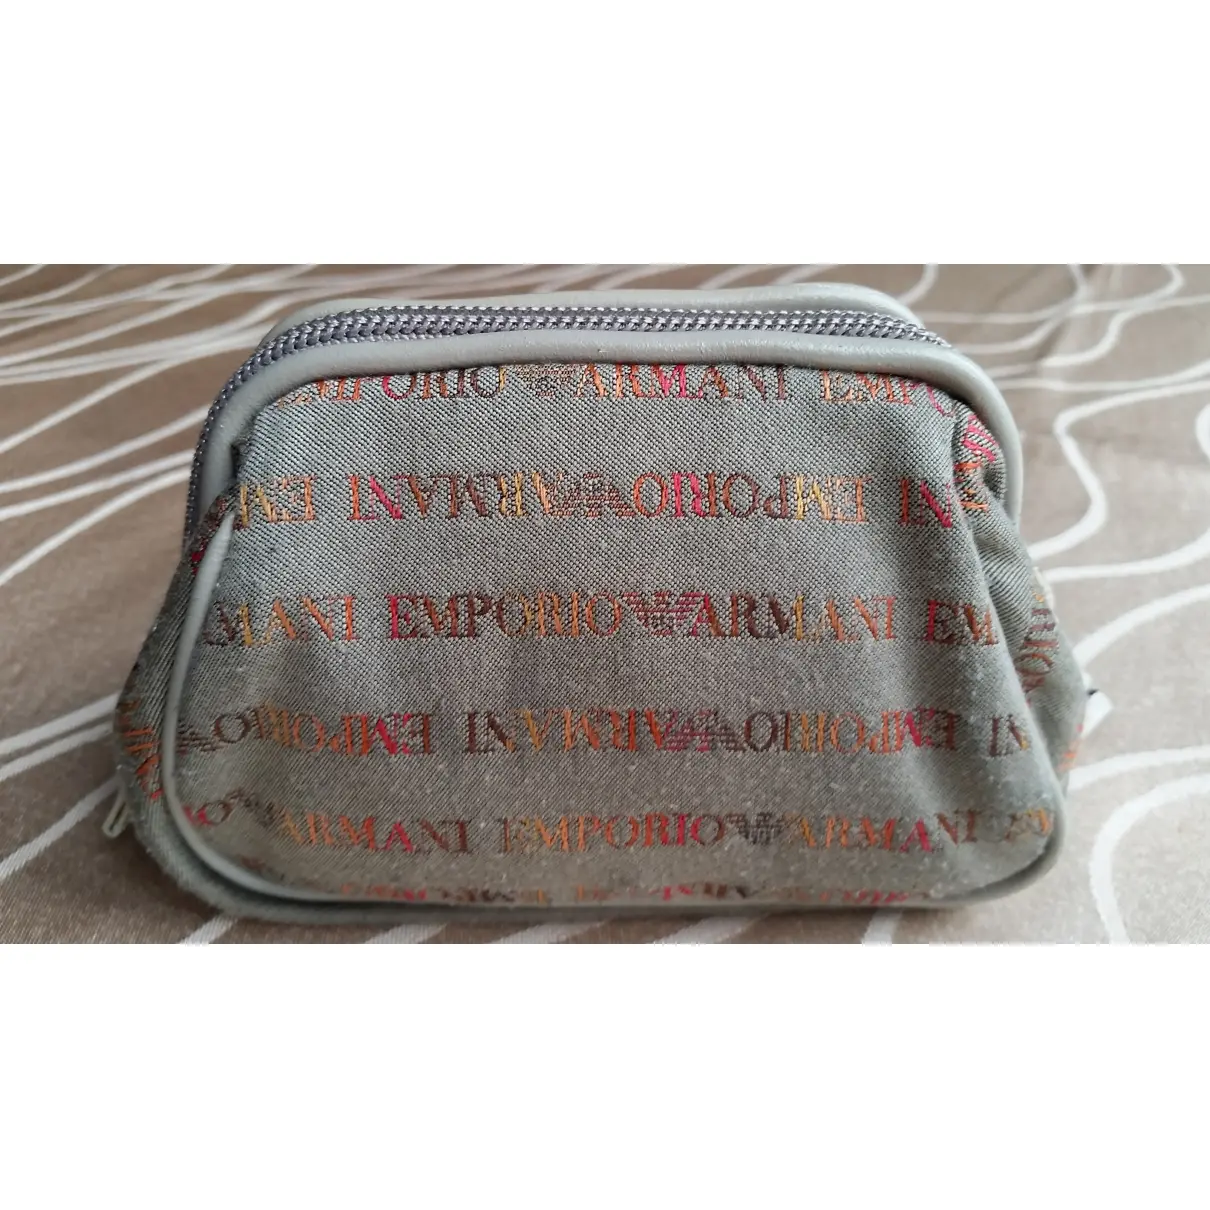 Buy Emporio Armani Cloth clutch bag online